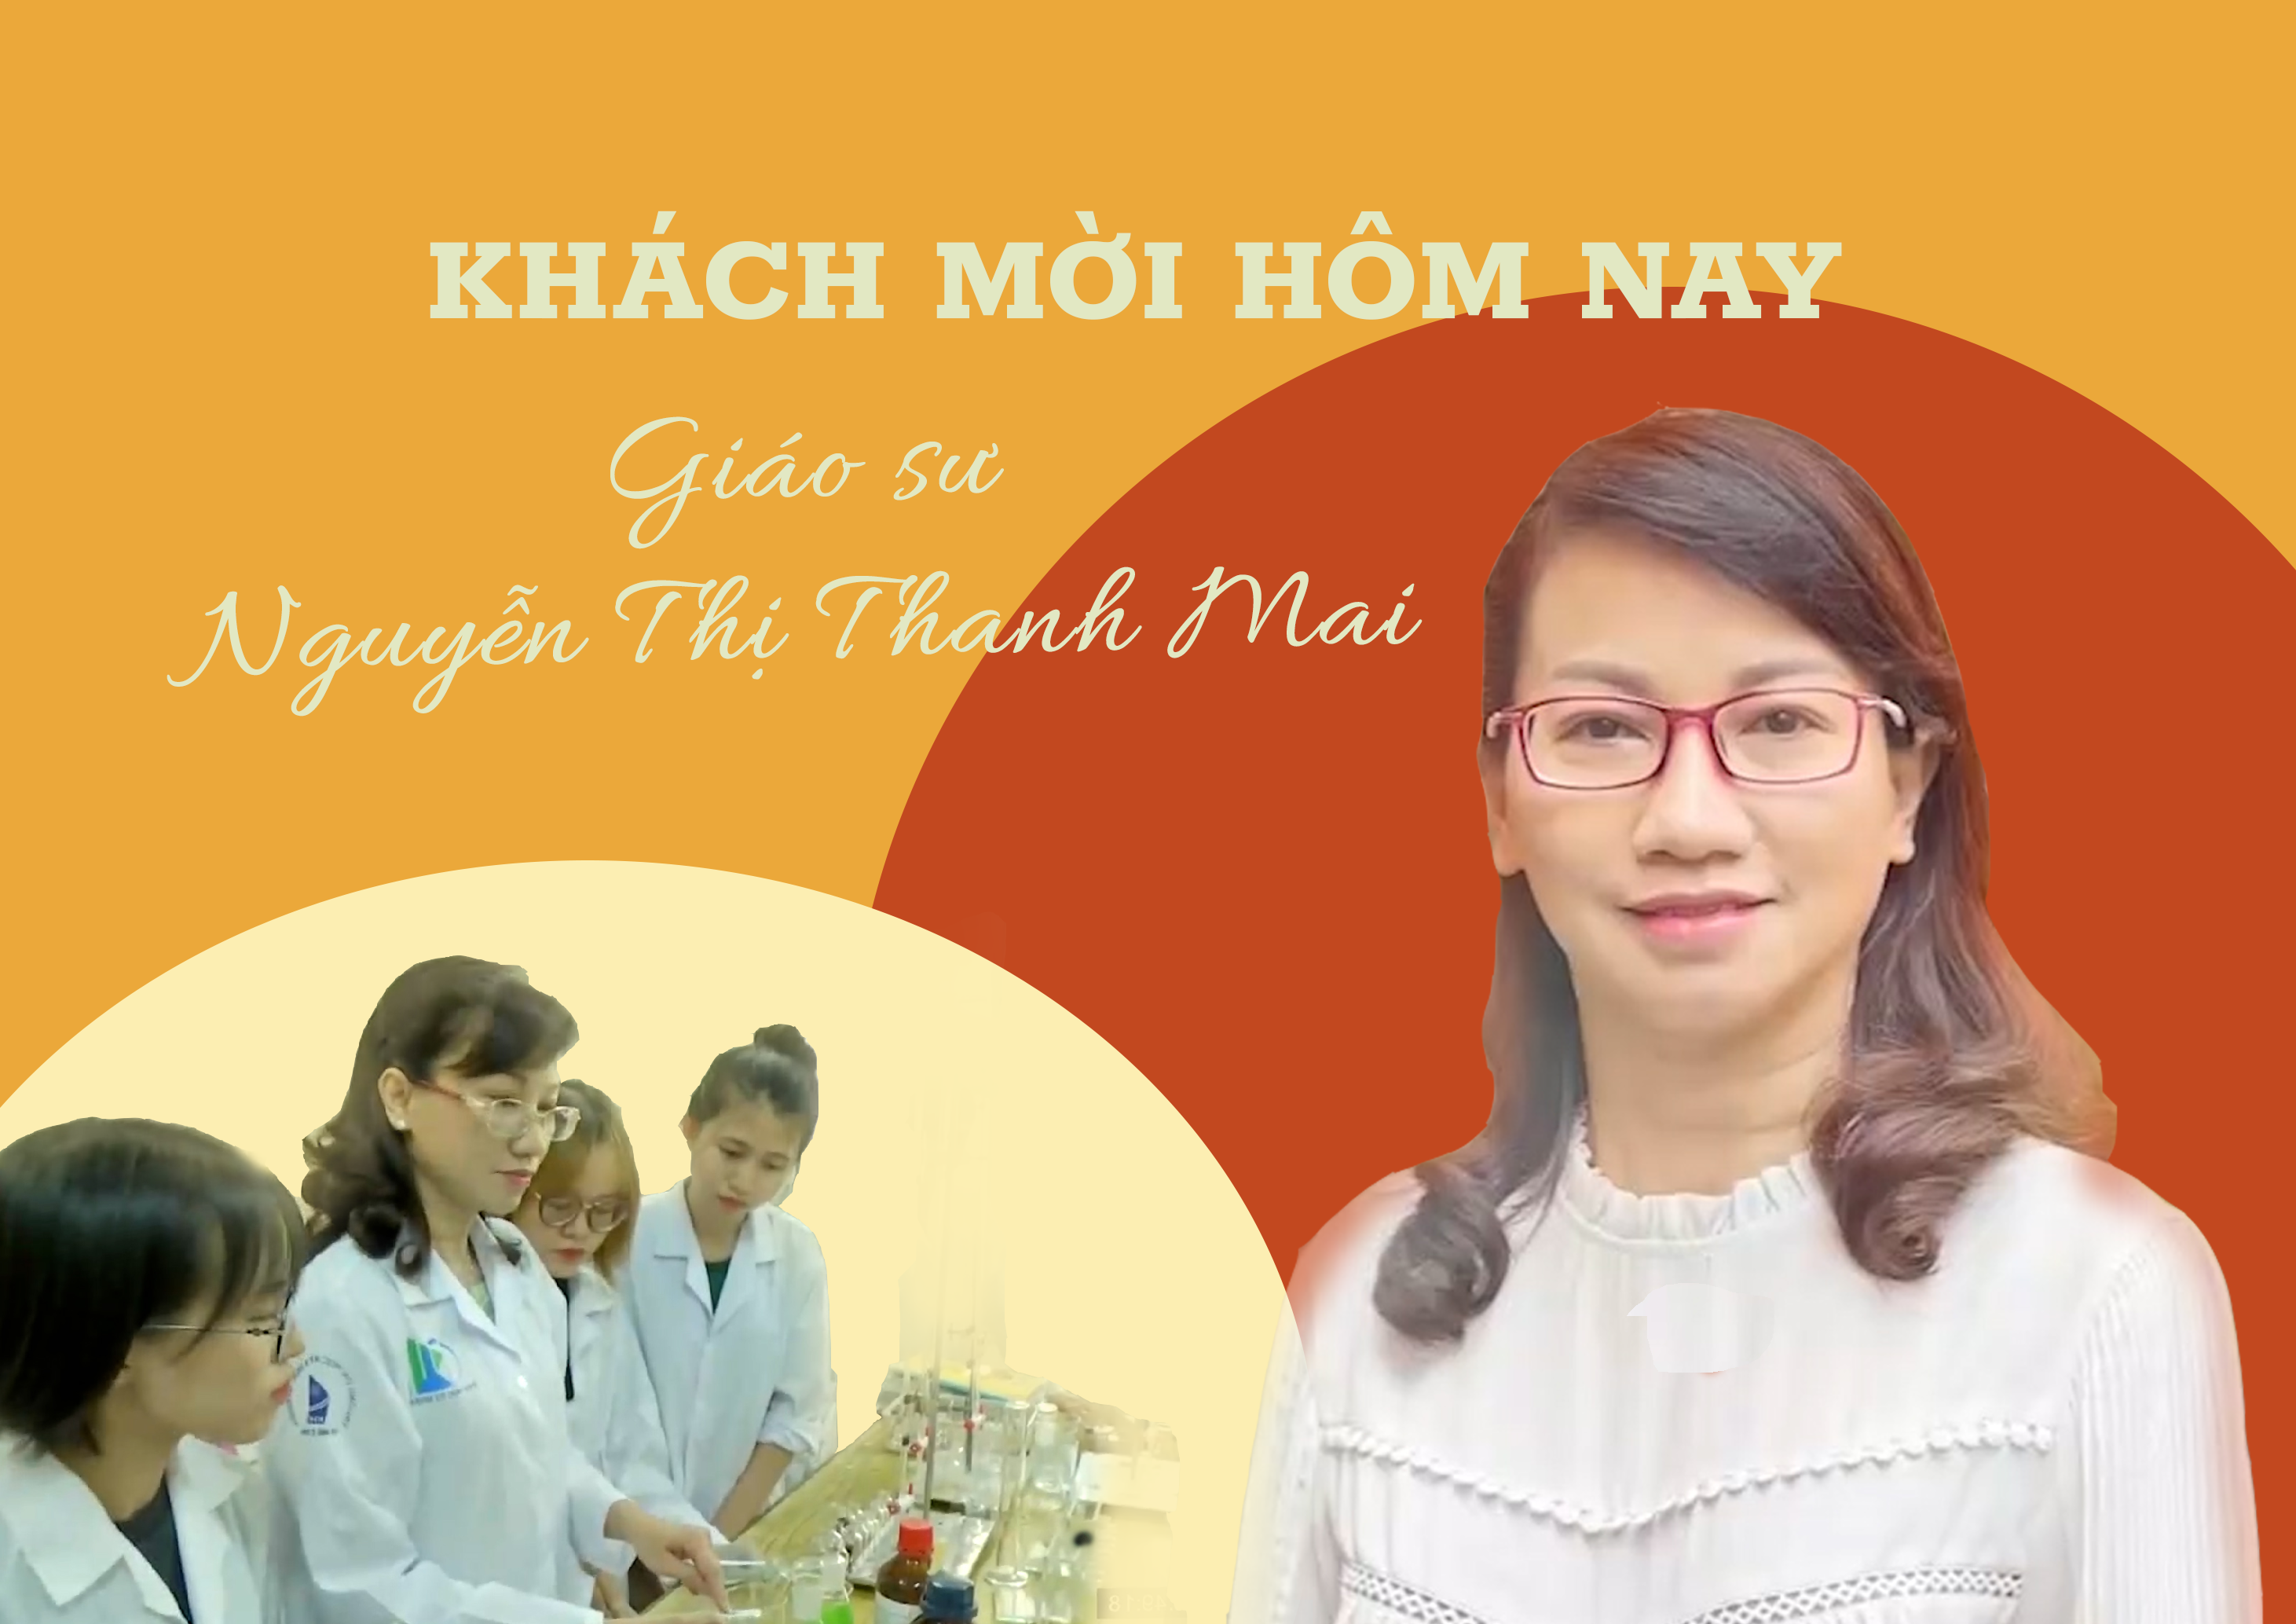 Khách mời hôm nay: Giáo sư Nguyễn Thị Thanh Mai - Nghiên cứu khoa học cần có đam mê và dám đương đầu với thử thách